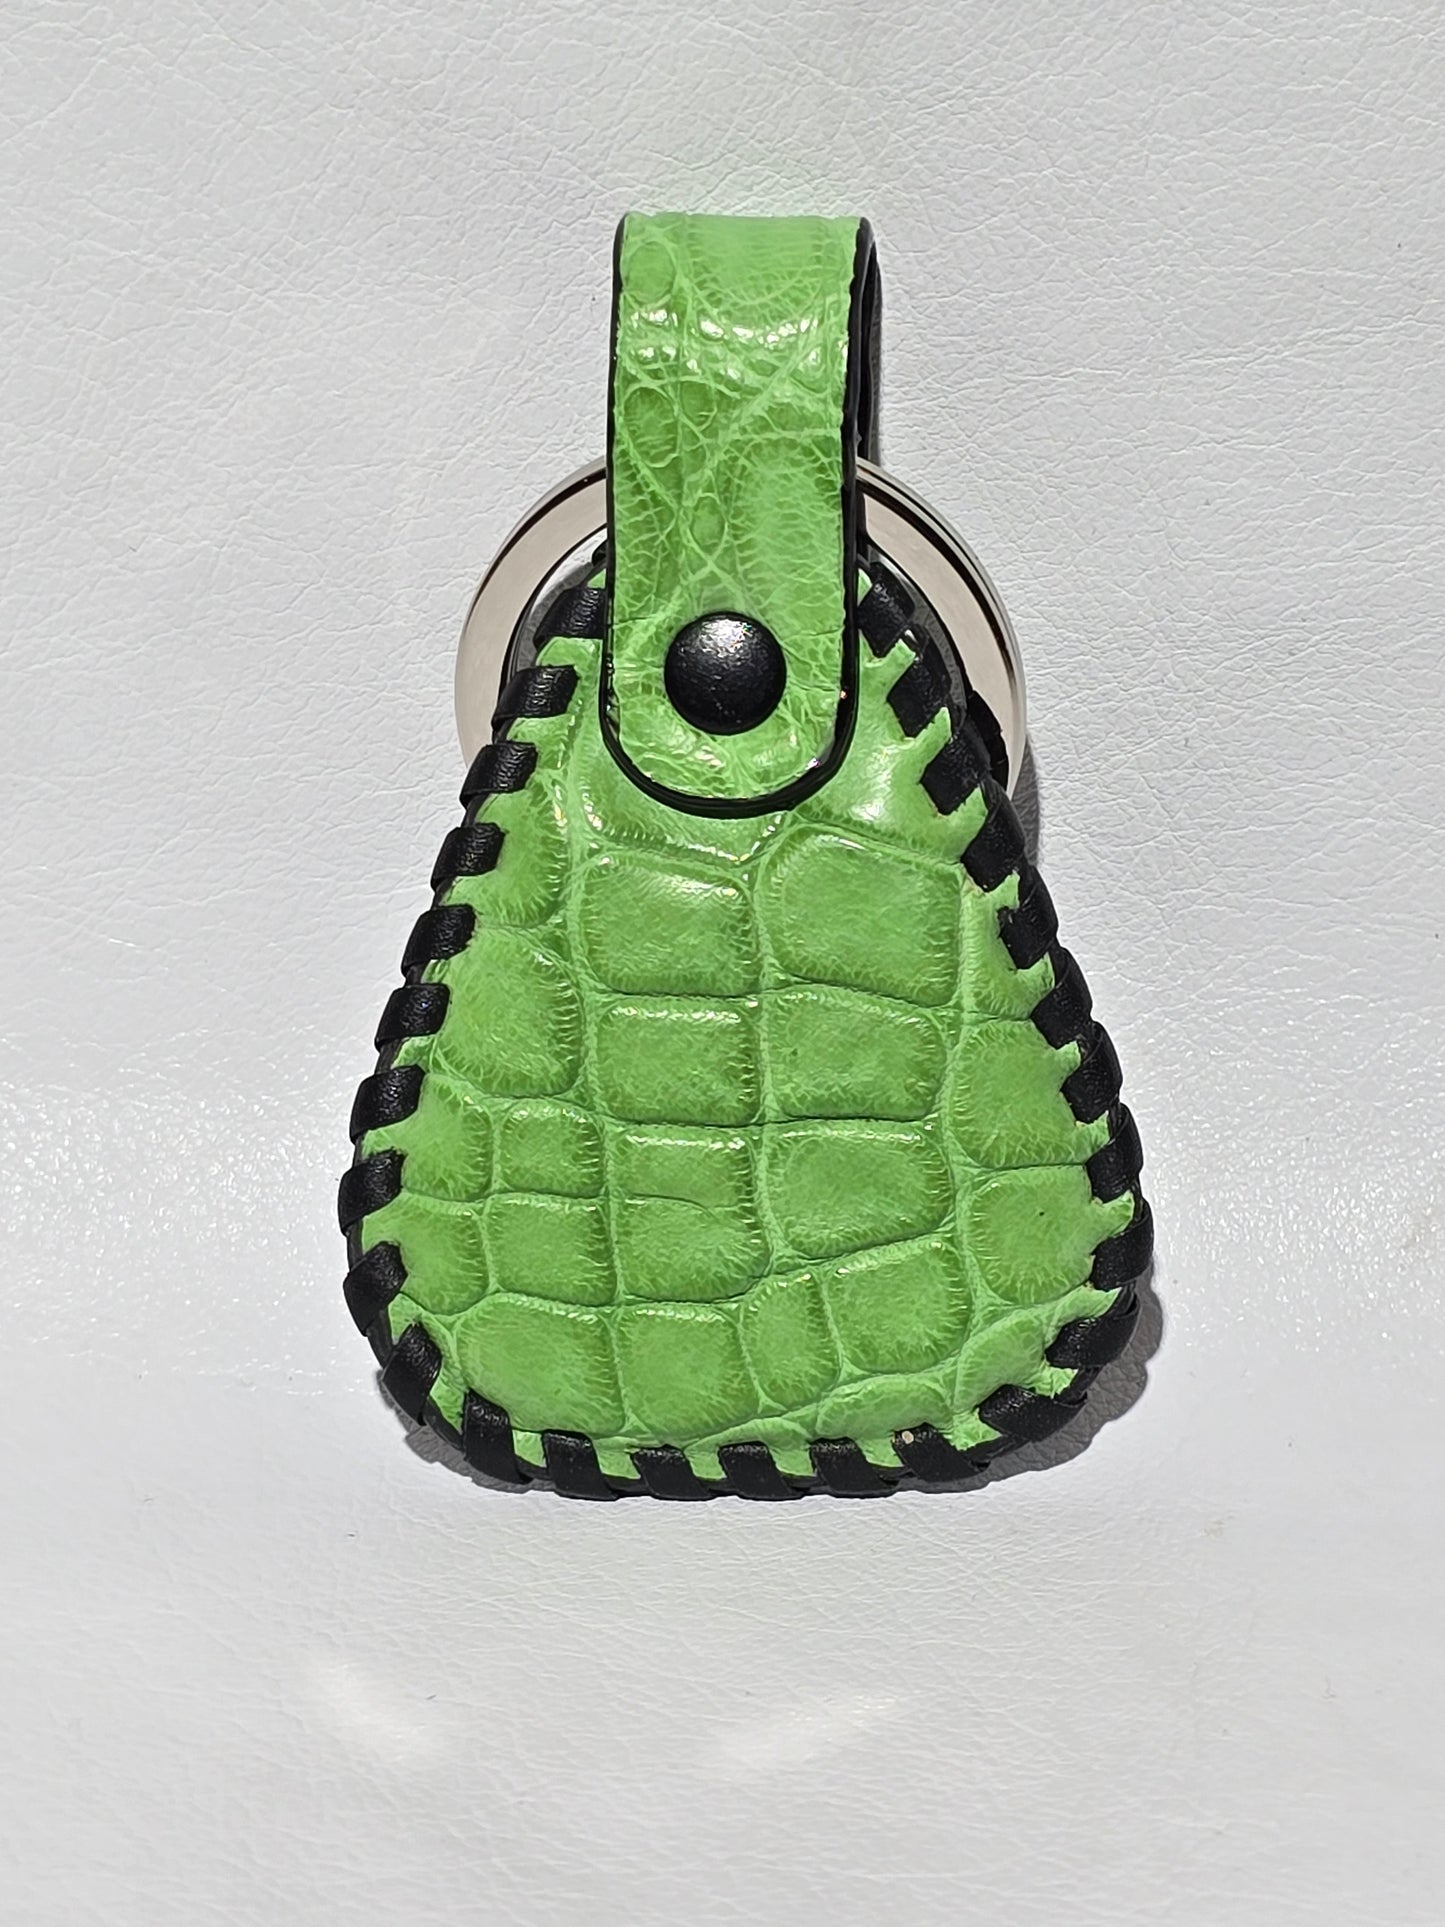 Crocodile Keychain